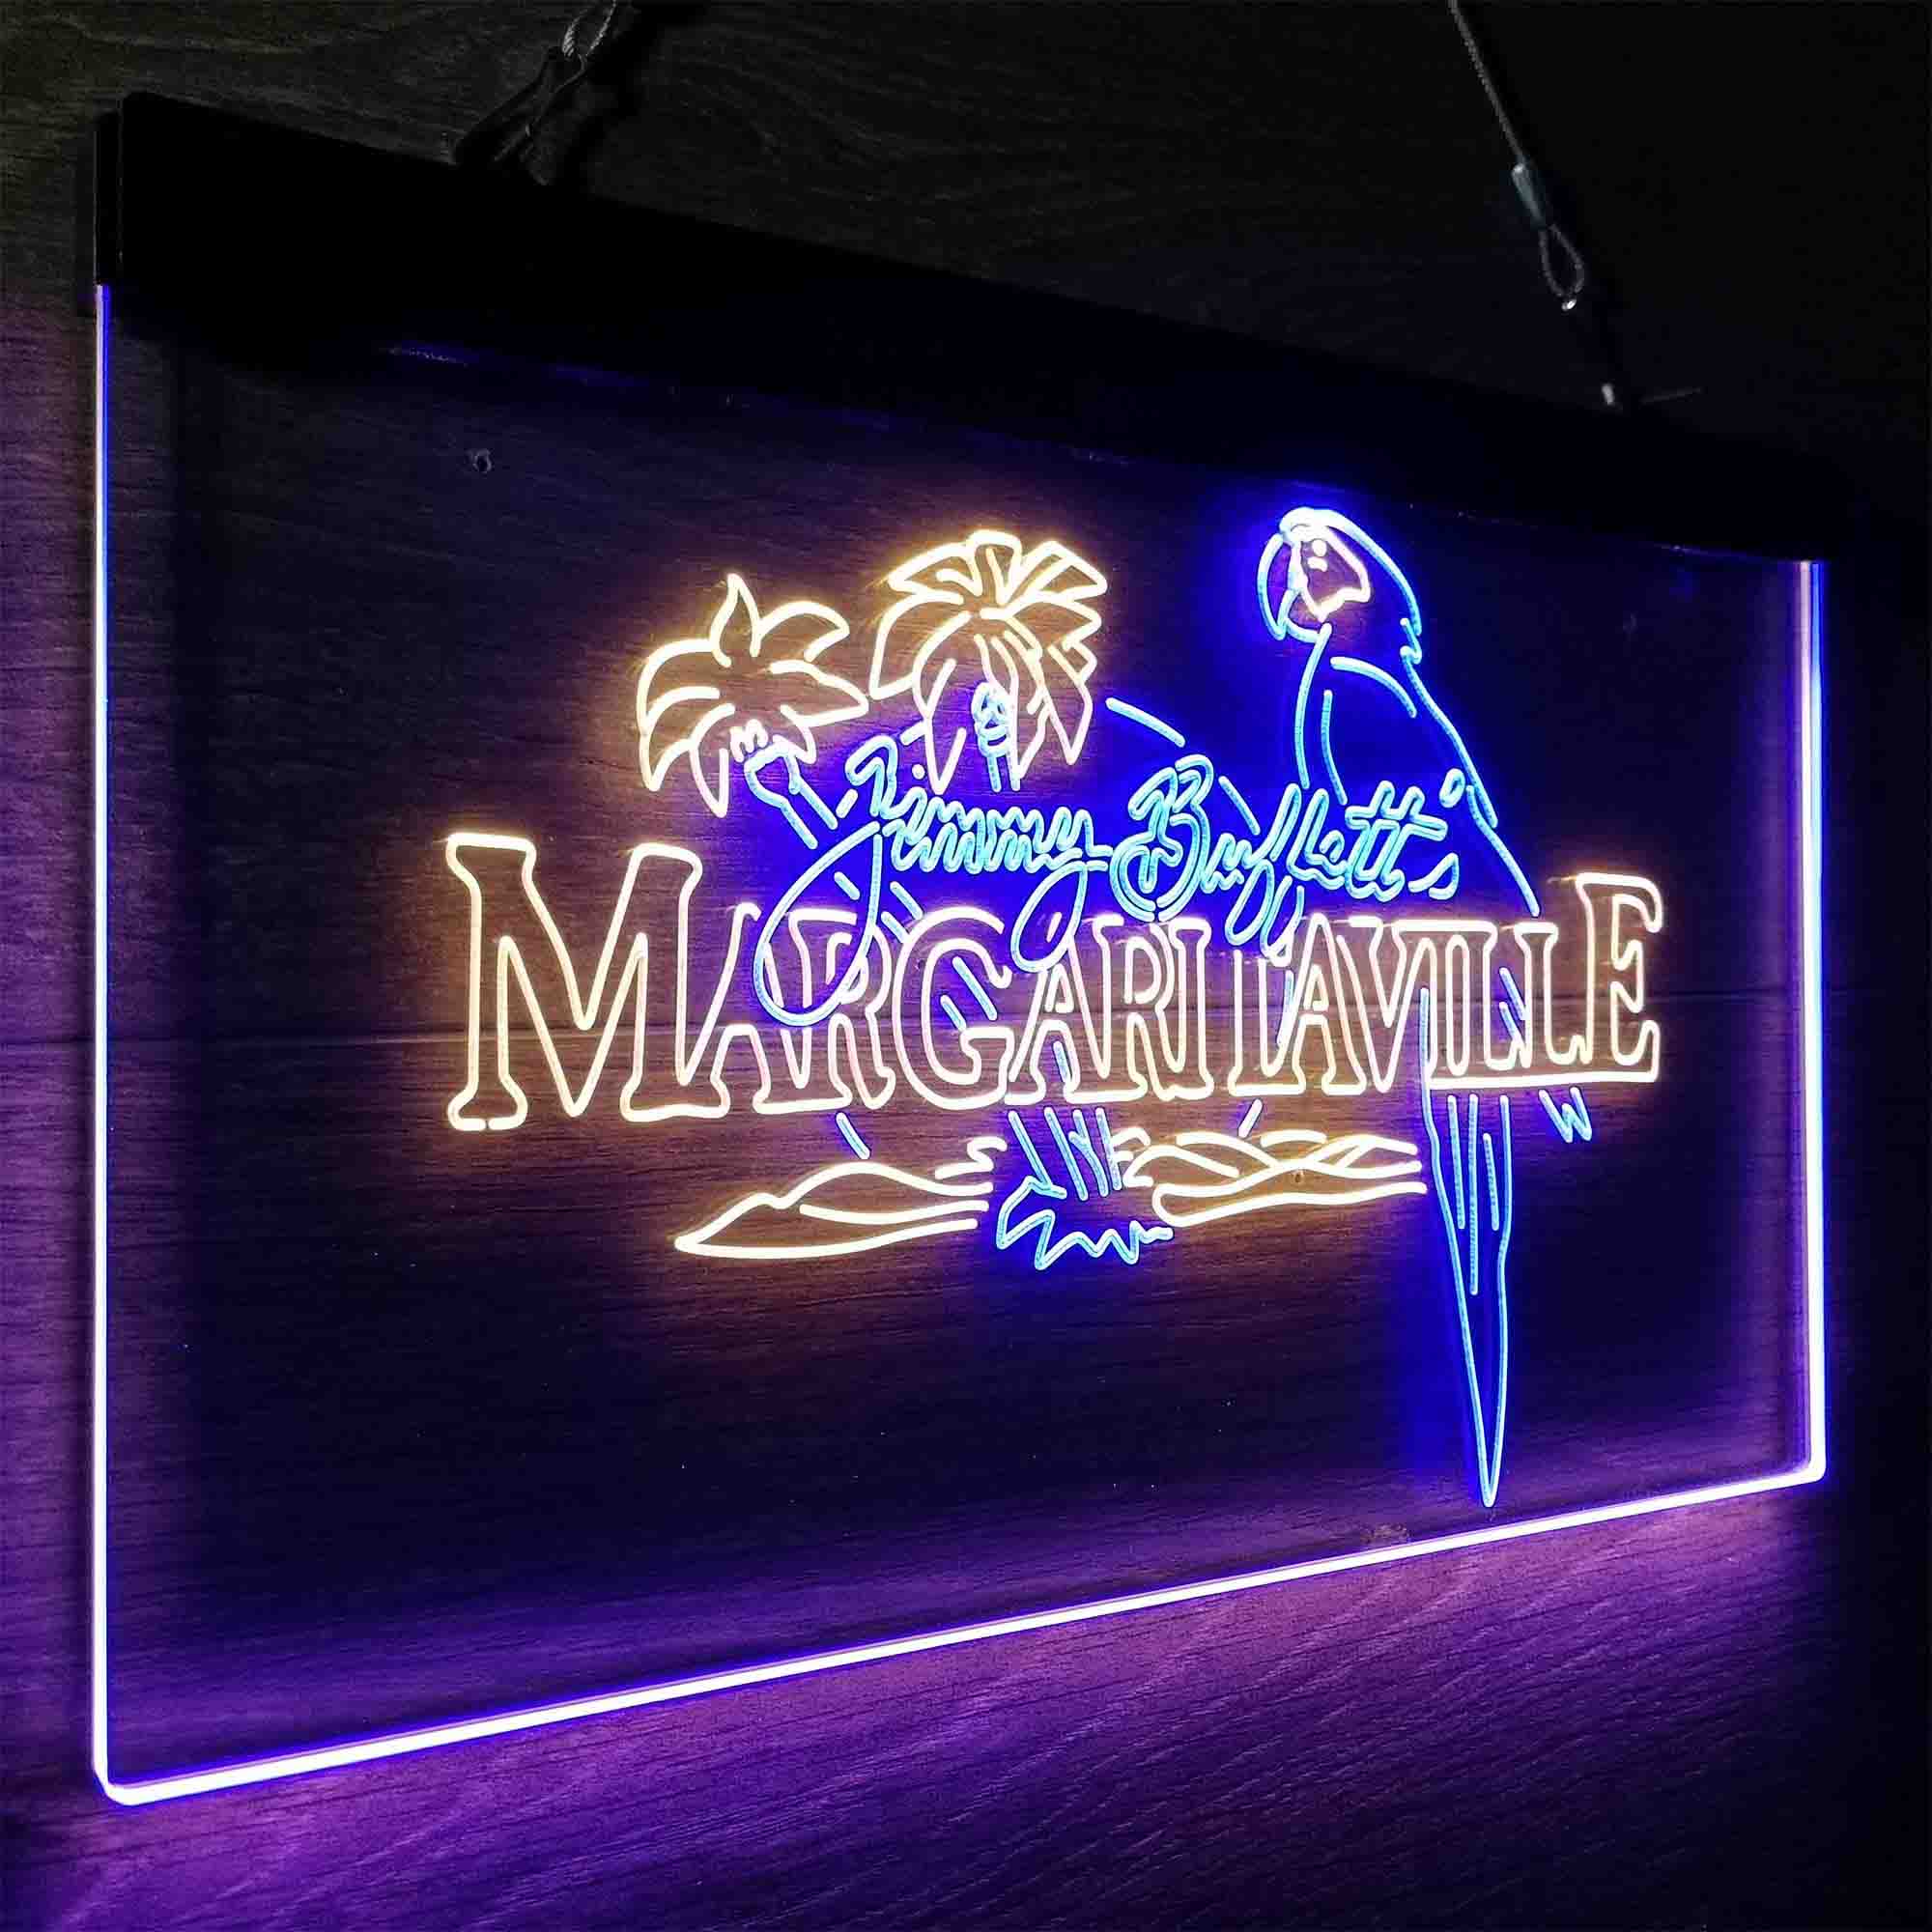 Margaritavilles Jimmys Buffetts Parrot LED Neon Sign